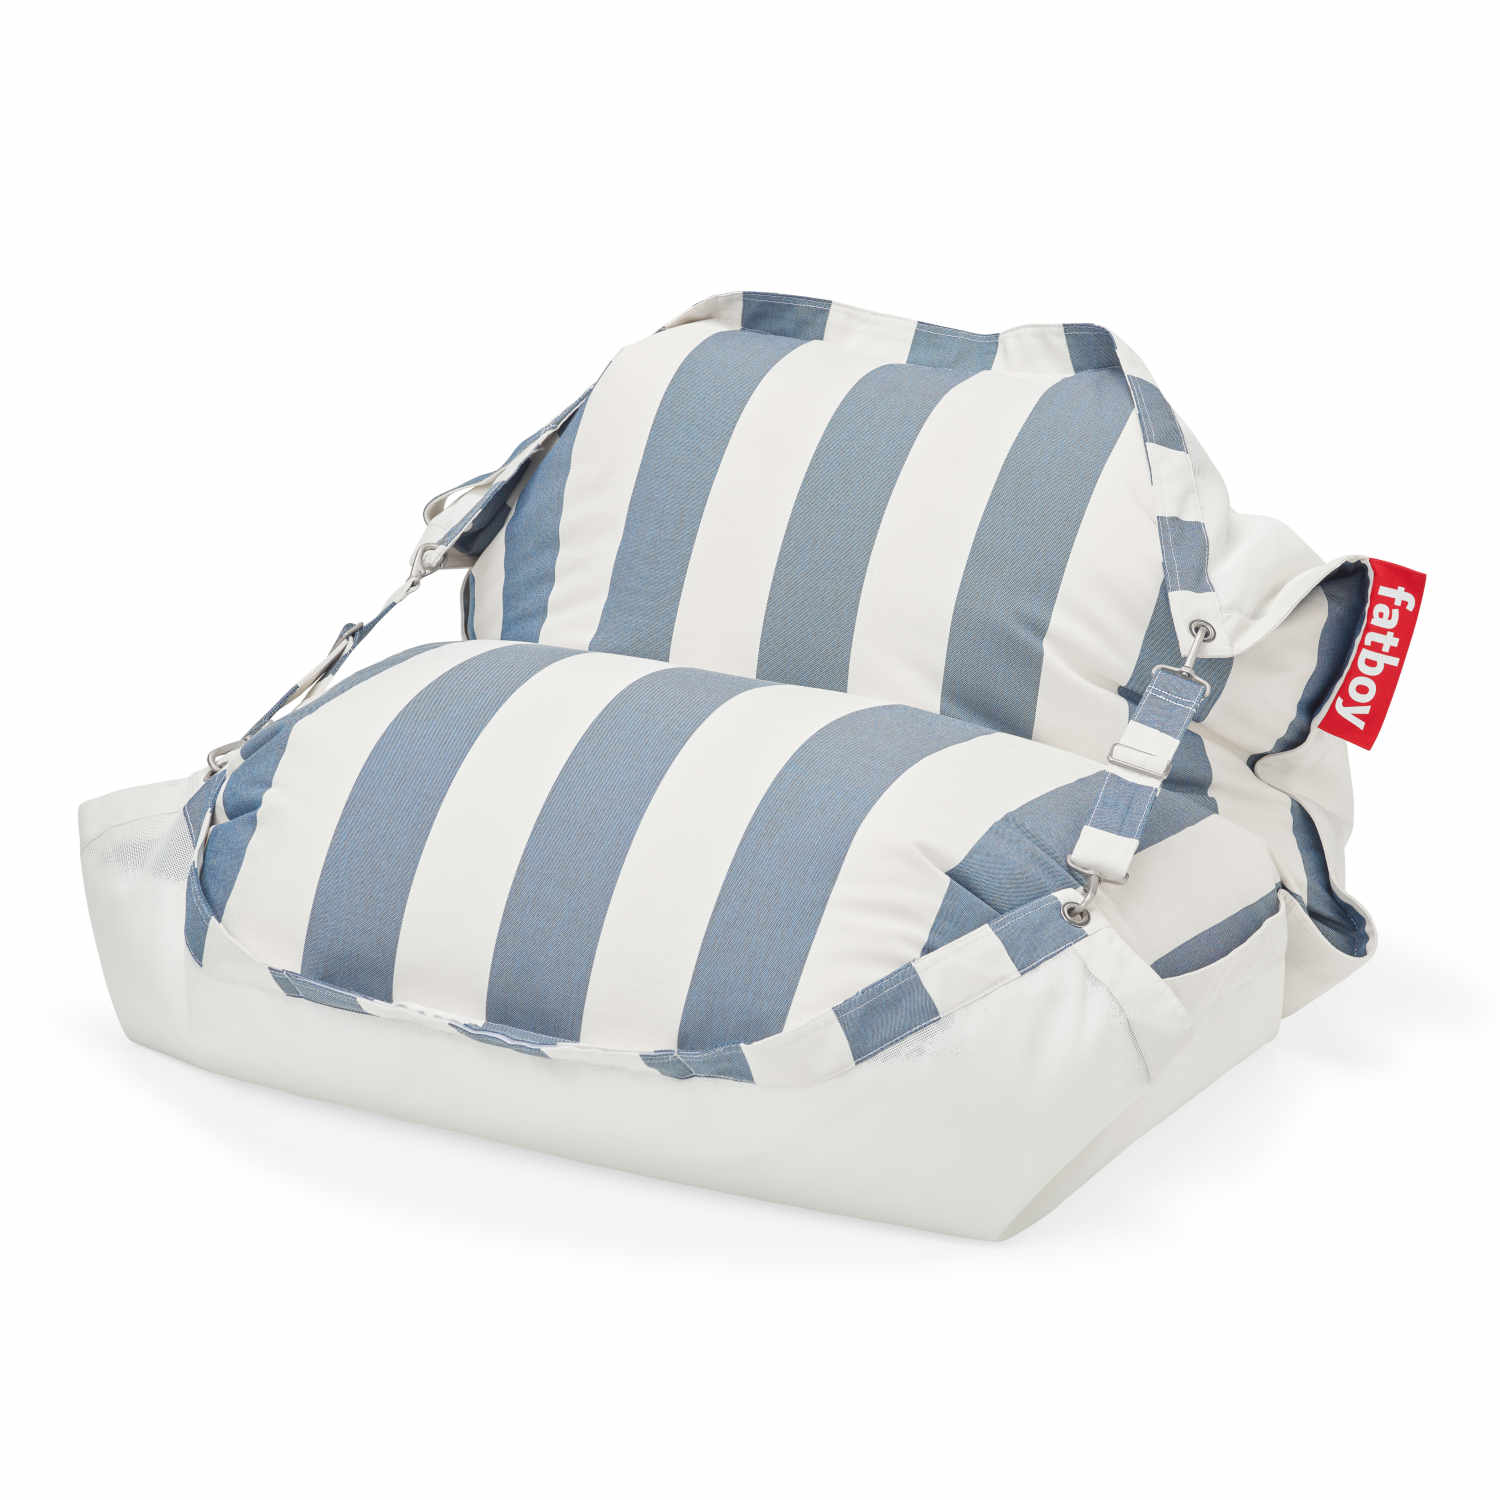 Floatzac Schwimm-Sitzsack, Farbe stripe ocean blue von Fatboy